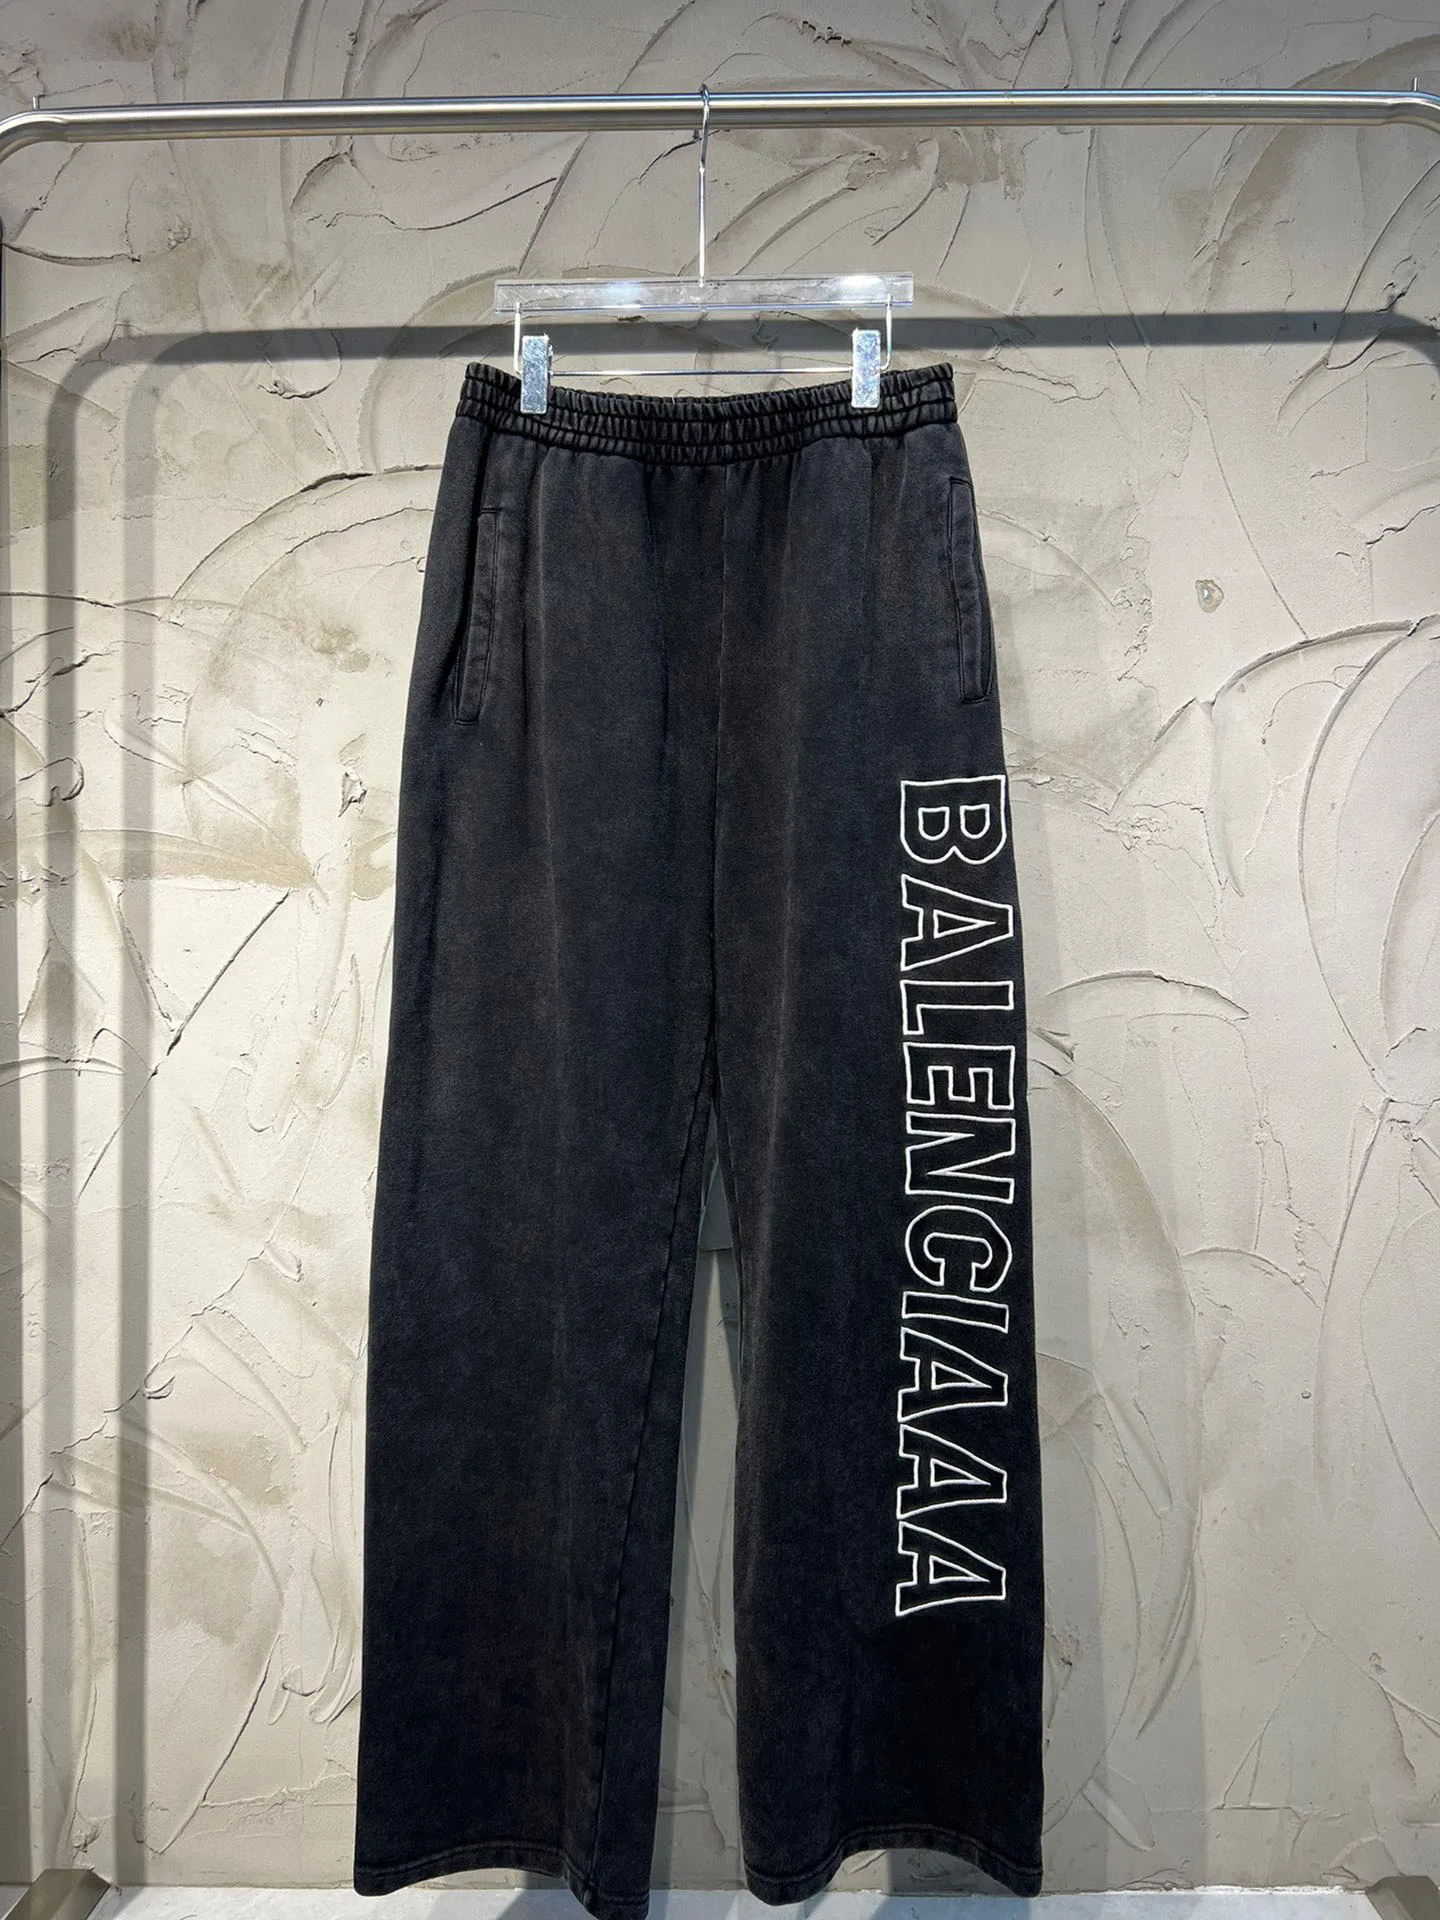 Paris Pant's Men's Plus Size Balanciagas Pants Wysoka jakość indygo indygo mała ilość cena hurtowa japońska bawełna Japonia czerwona 6728